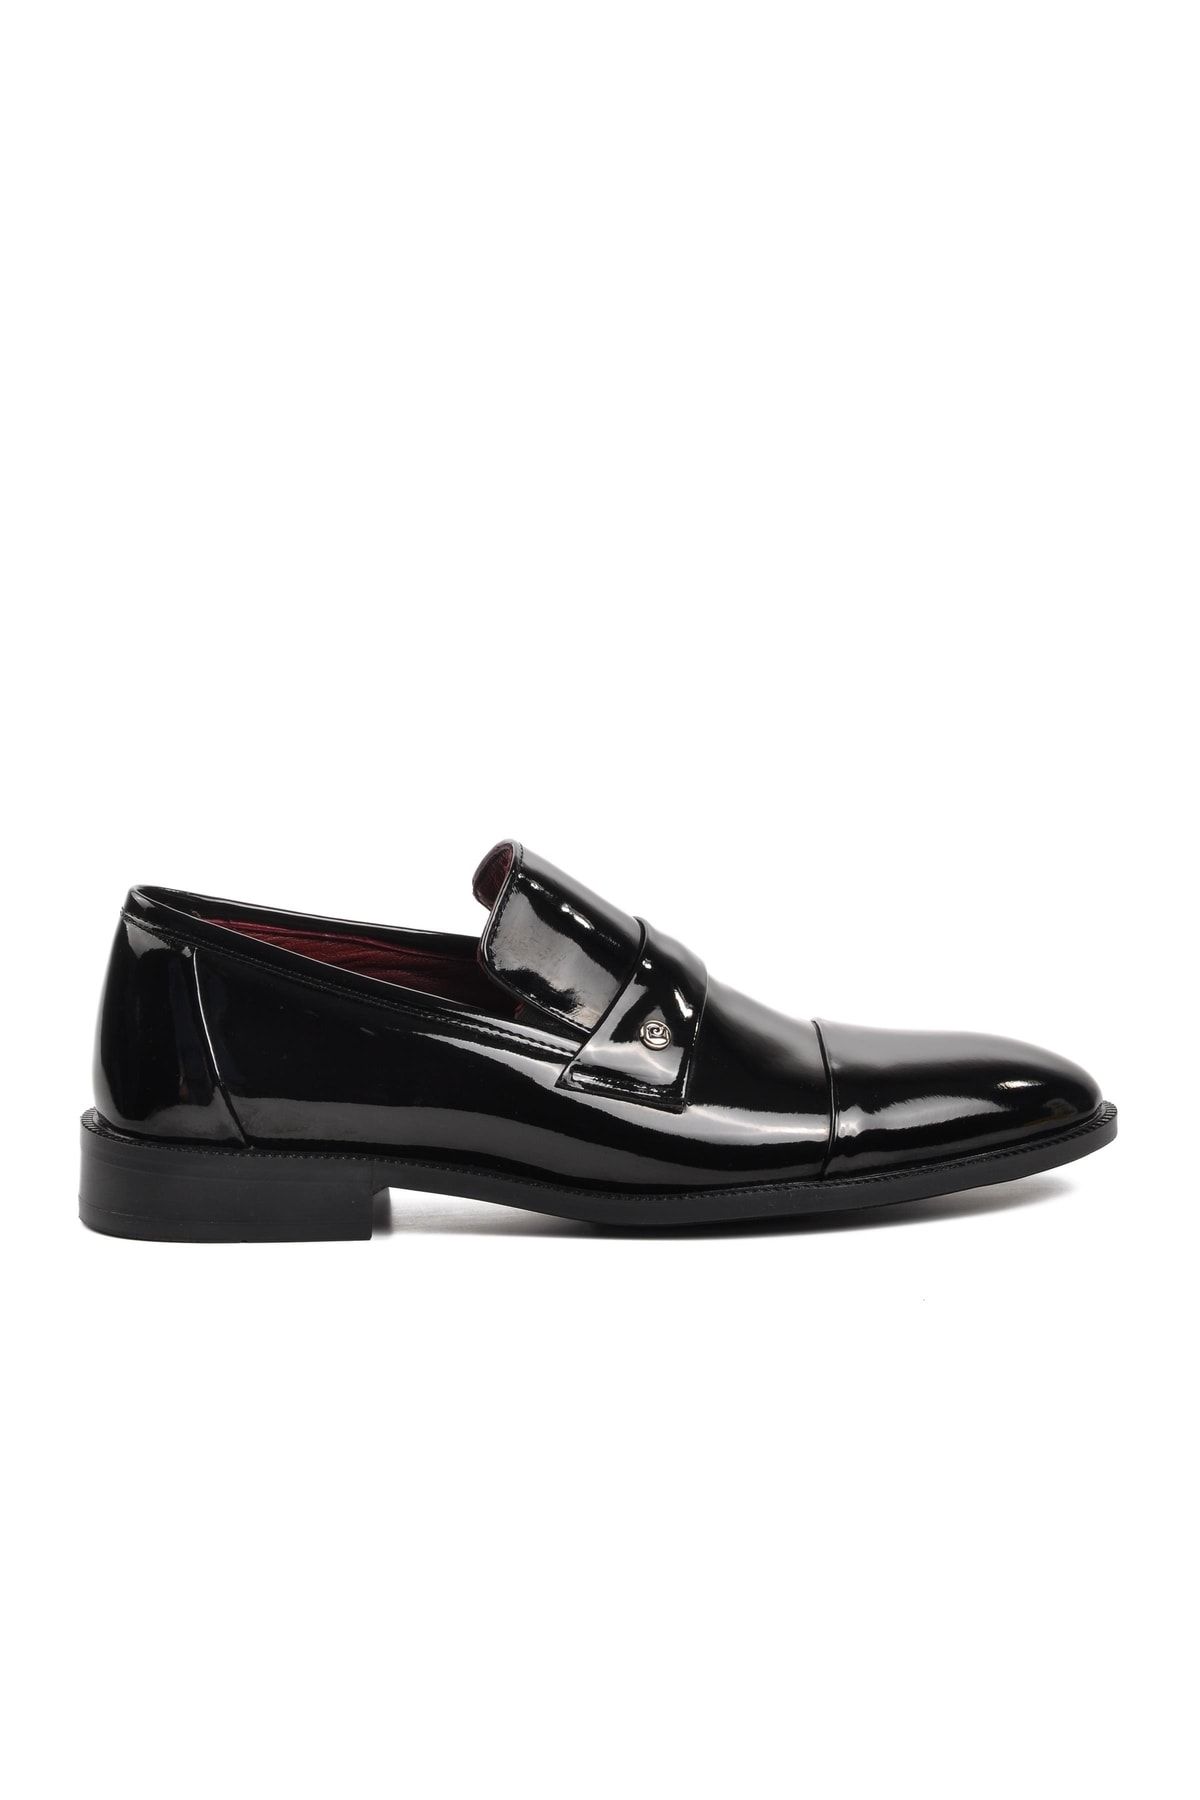 Pierre Cardin 7040 Siyah Rugan Içi Dışı Hakiki Deri Erkek Klasik Ayakkabı